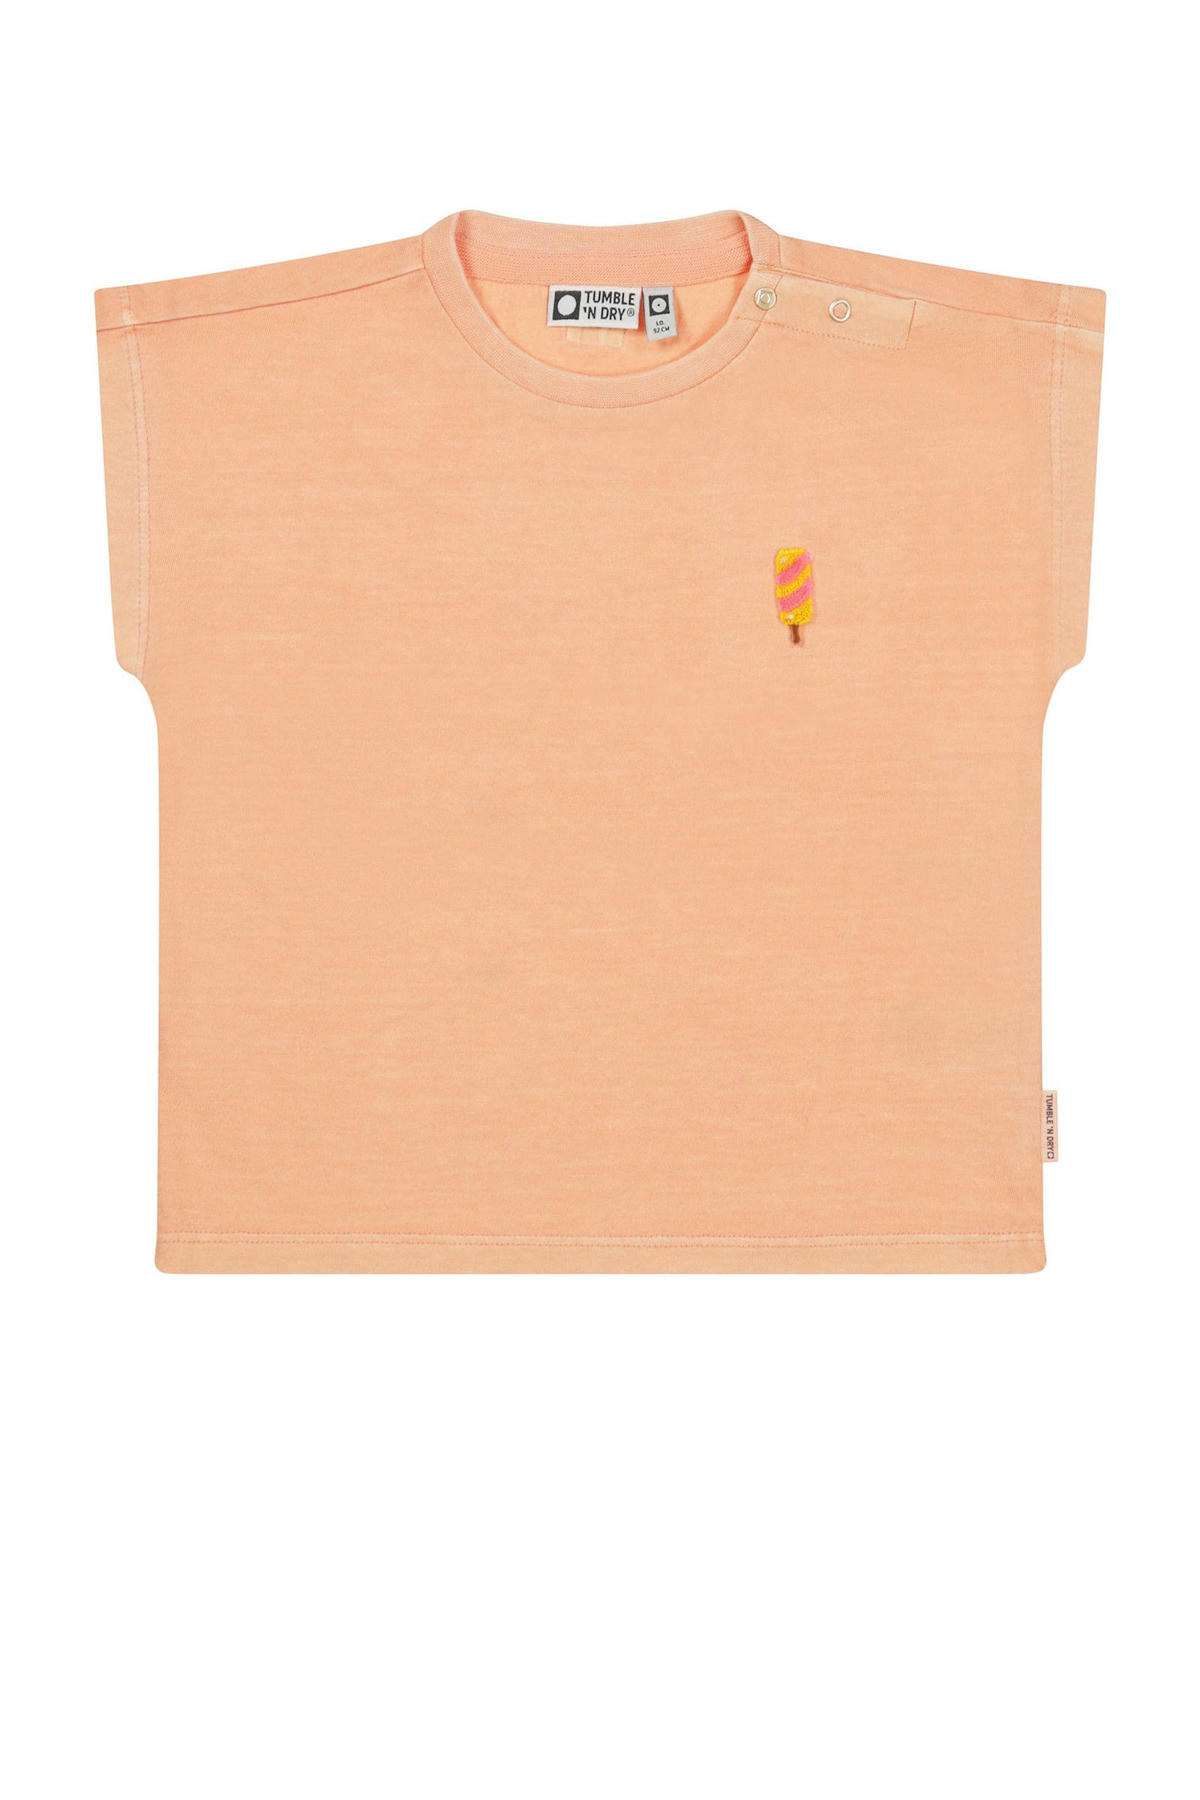 Middel voorzetsel Hilarisch Tumble 'n Dry Lo T-shirt Gelato van biologisch katoen zachtoranje | wehkamp